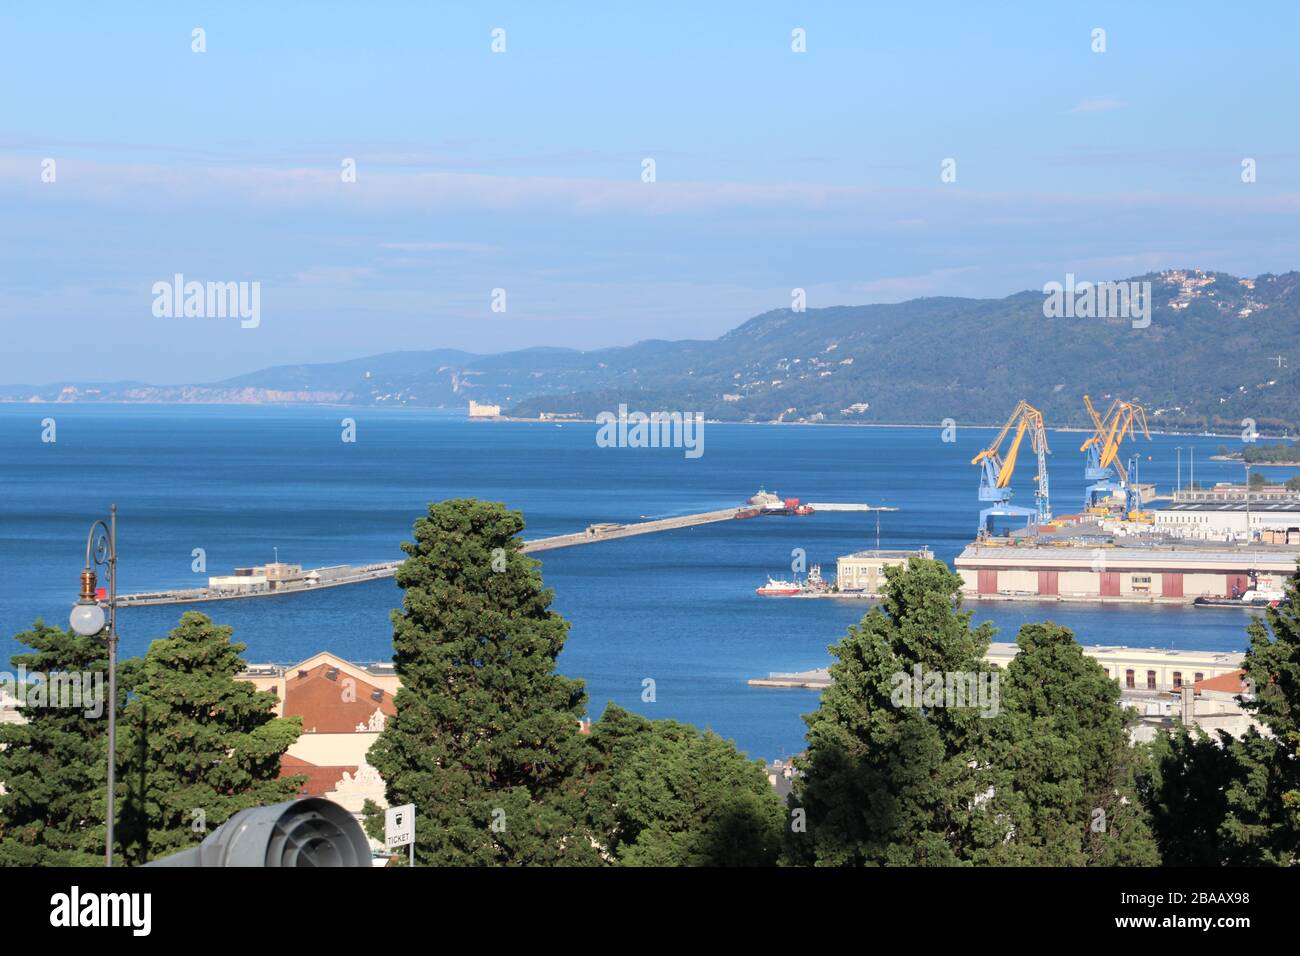 Blick auf den Hafen von Triest in Italien Stock Photo